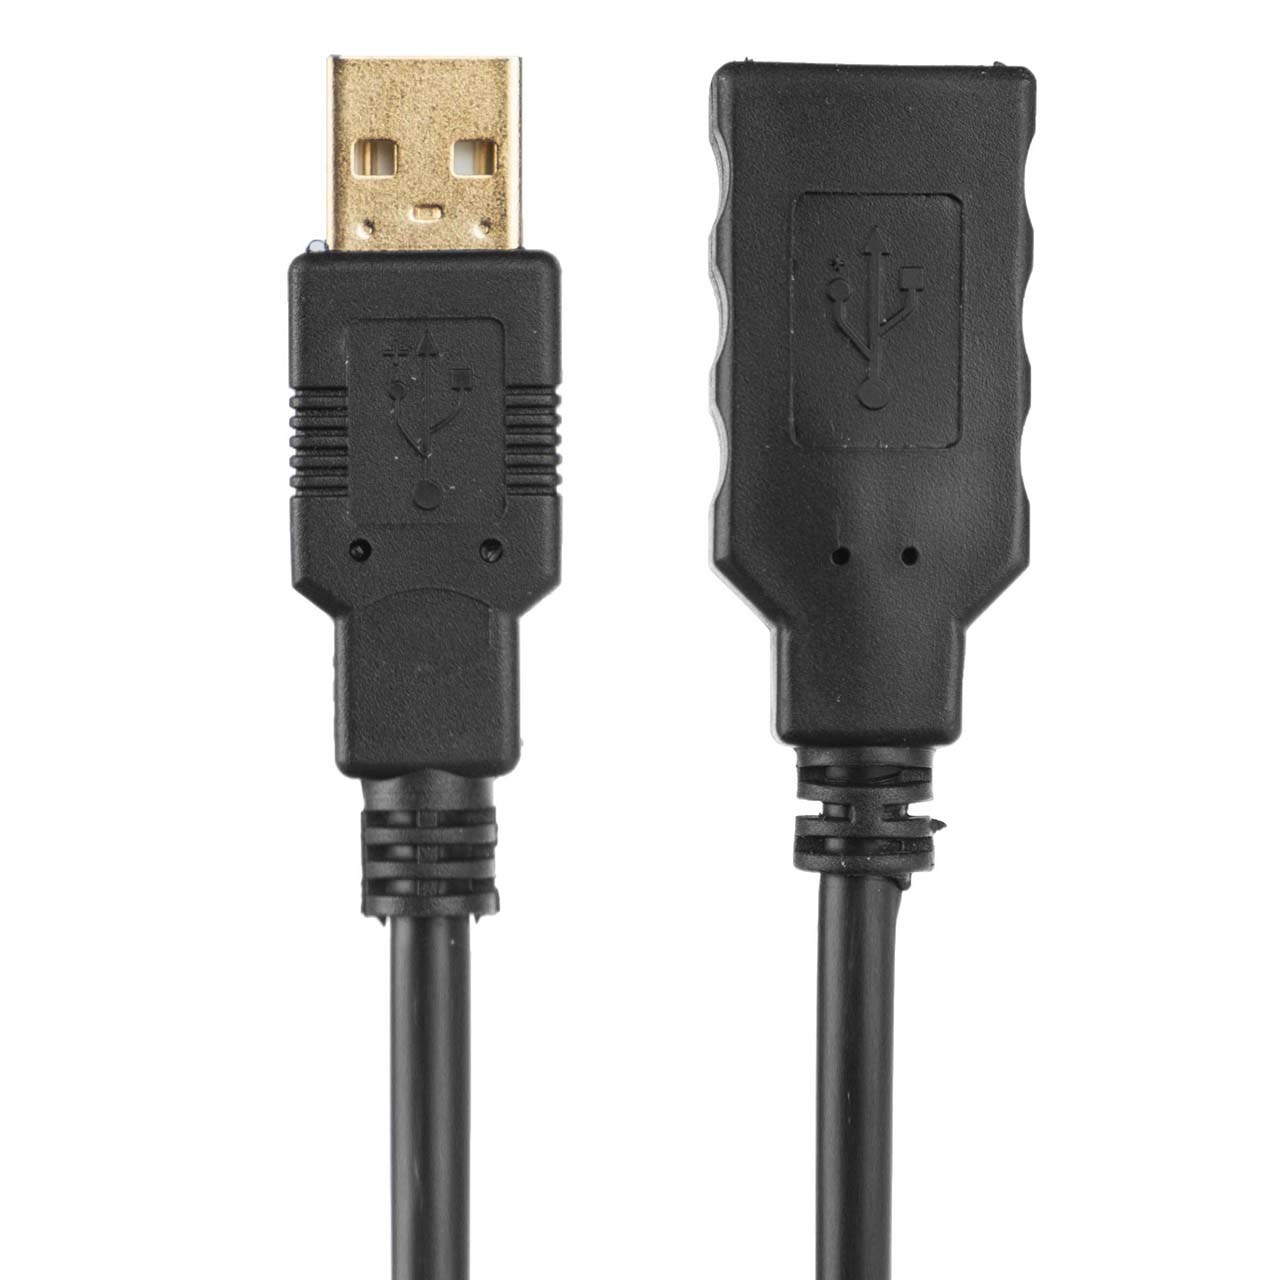 کابل افزایش طول USB 2.0 ان تی آر به طول 3 متر